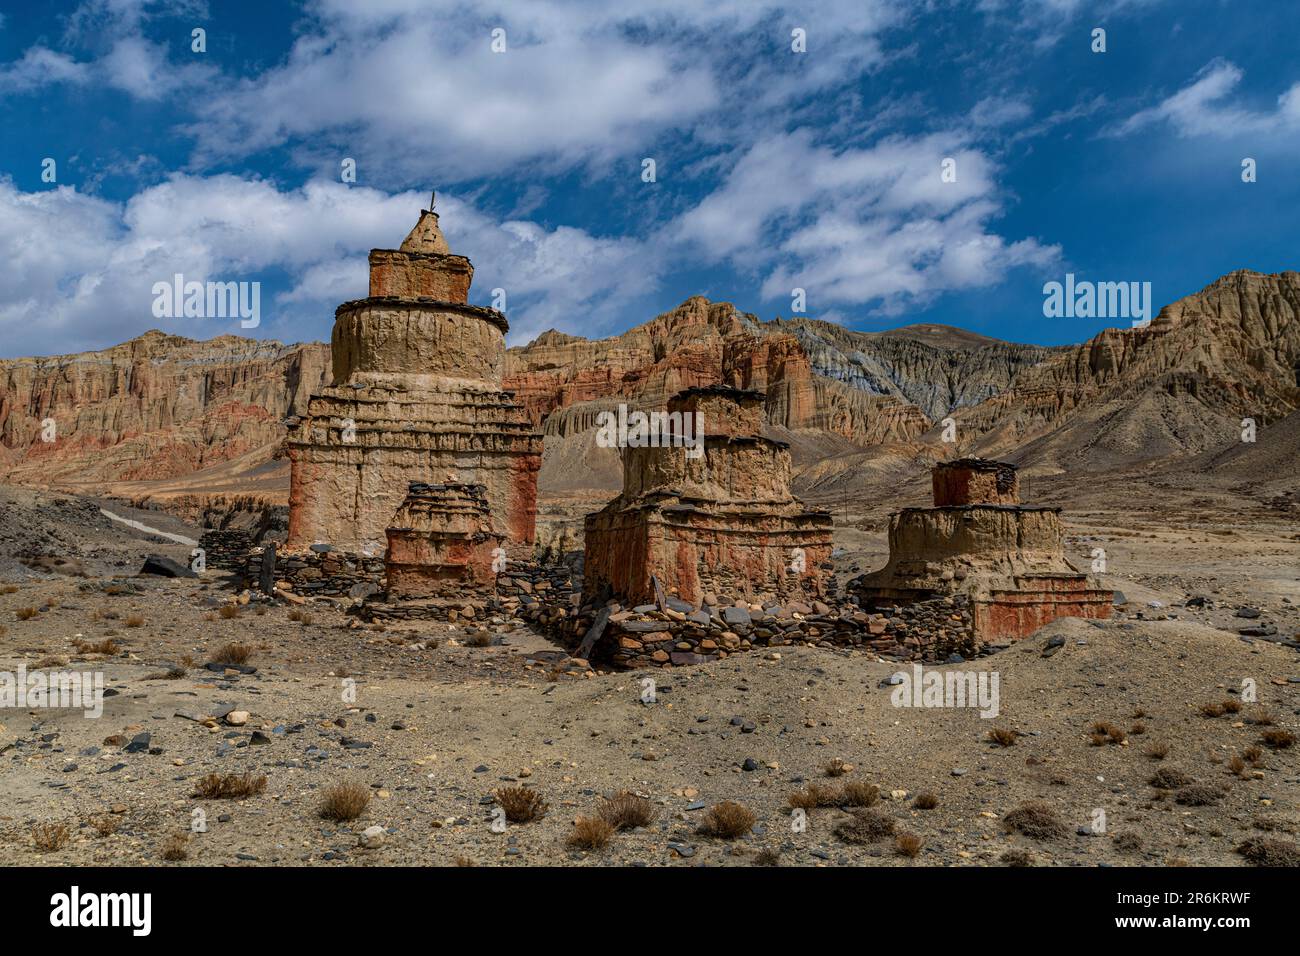 Stupa bouddhiste peint en couleurs, dans un paysage de montagne érodé, Royaume de Mustang, Himalaya, Népal, Asie Banque D'Images